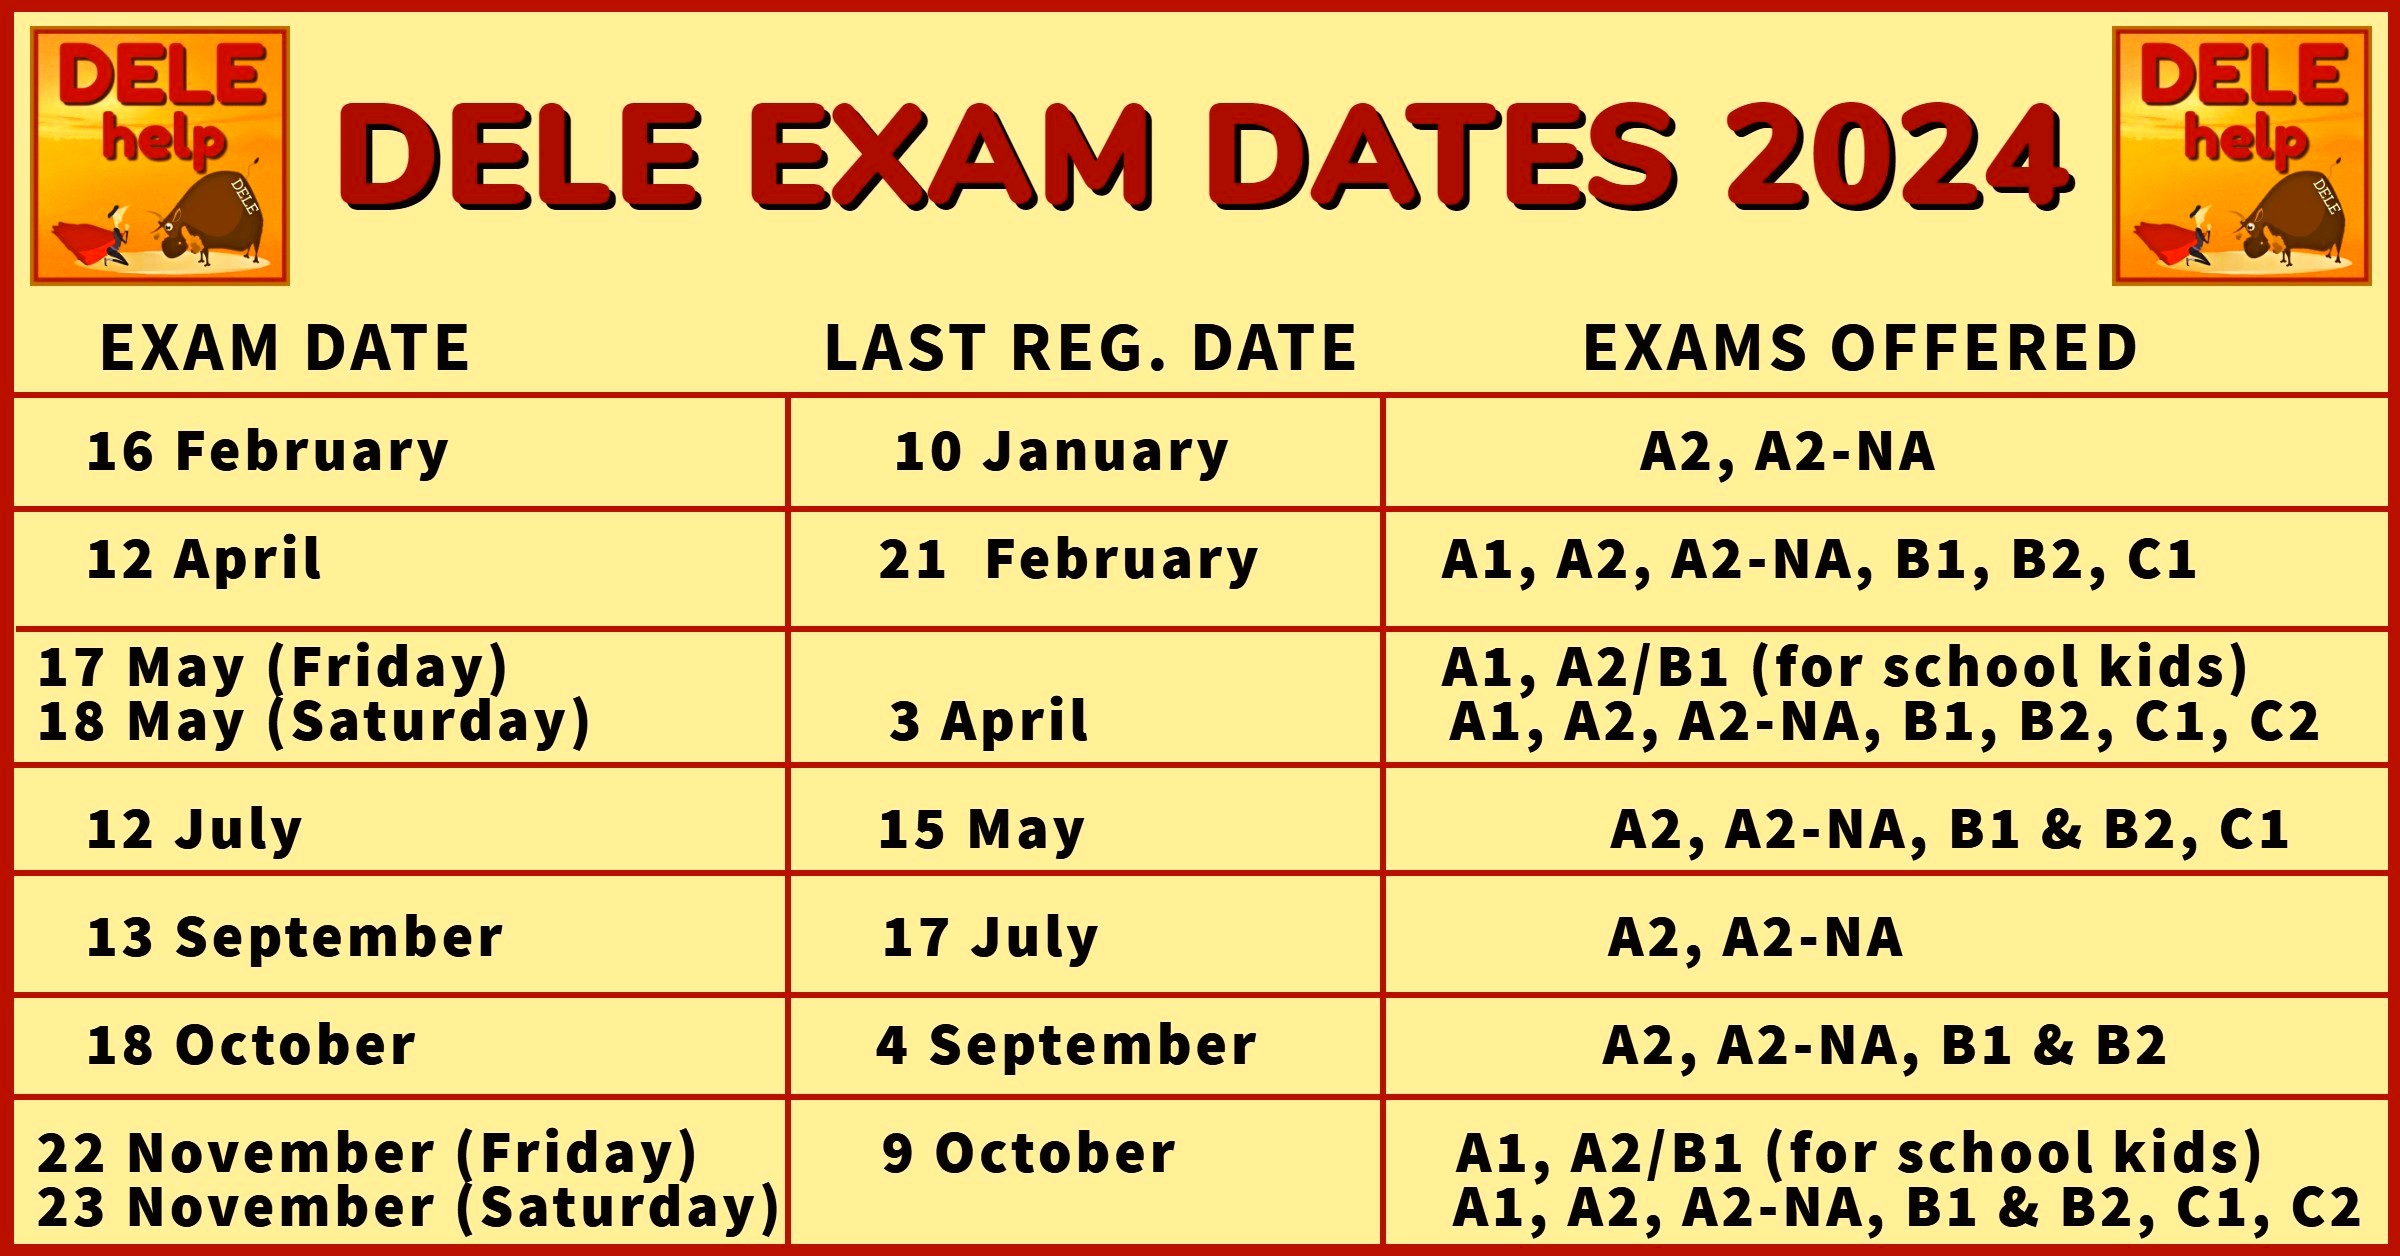 DELEhelp Exam date calendar 2024